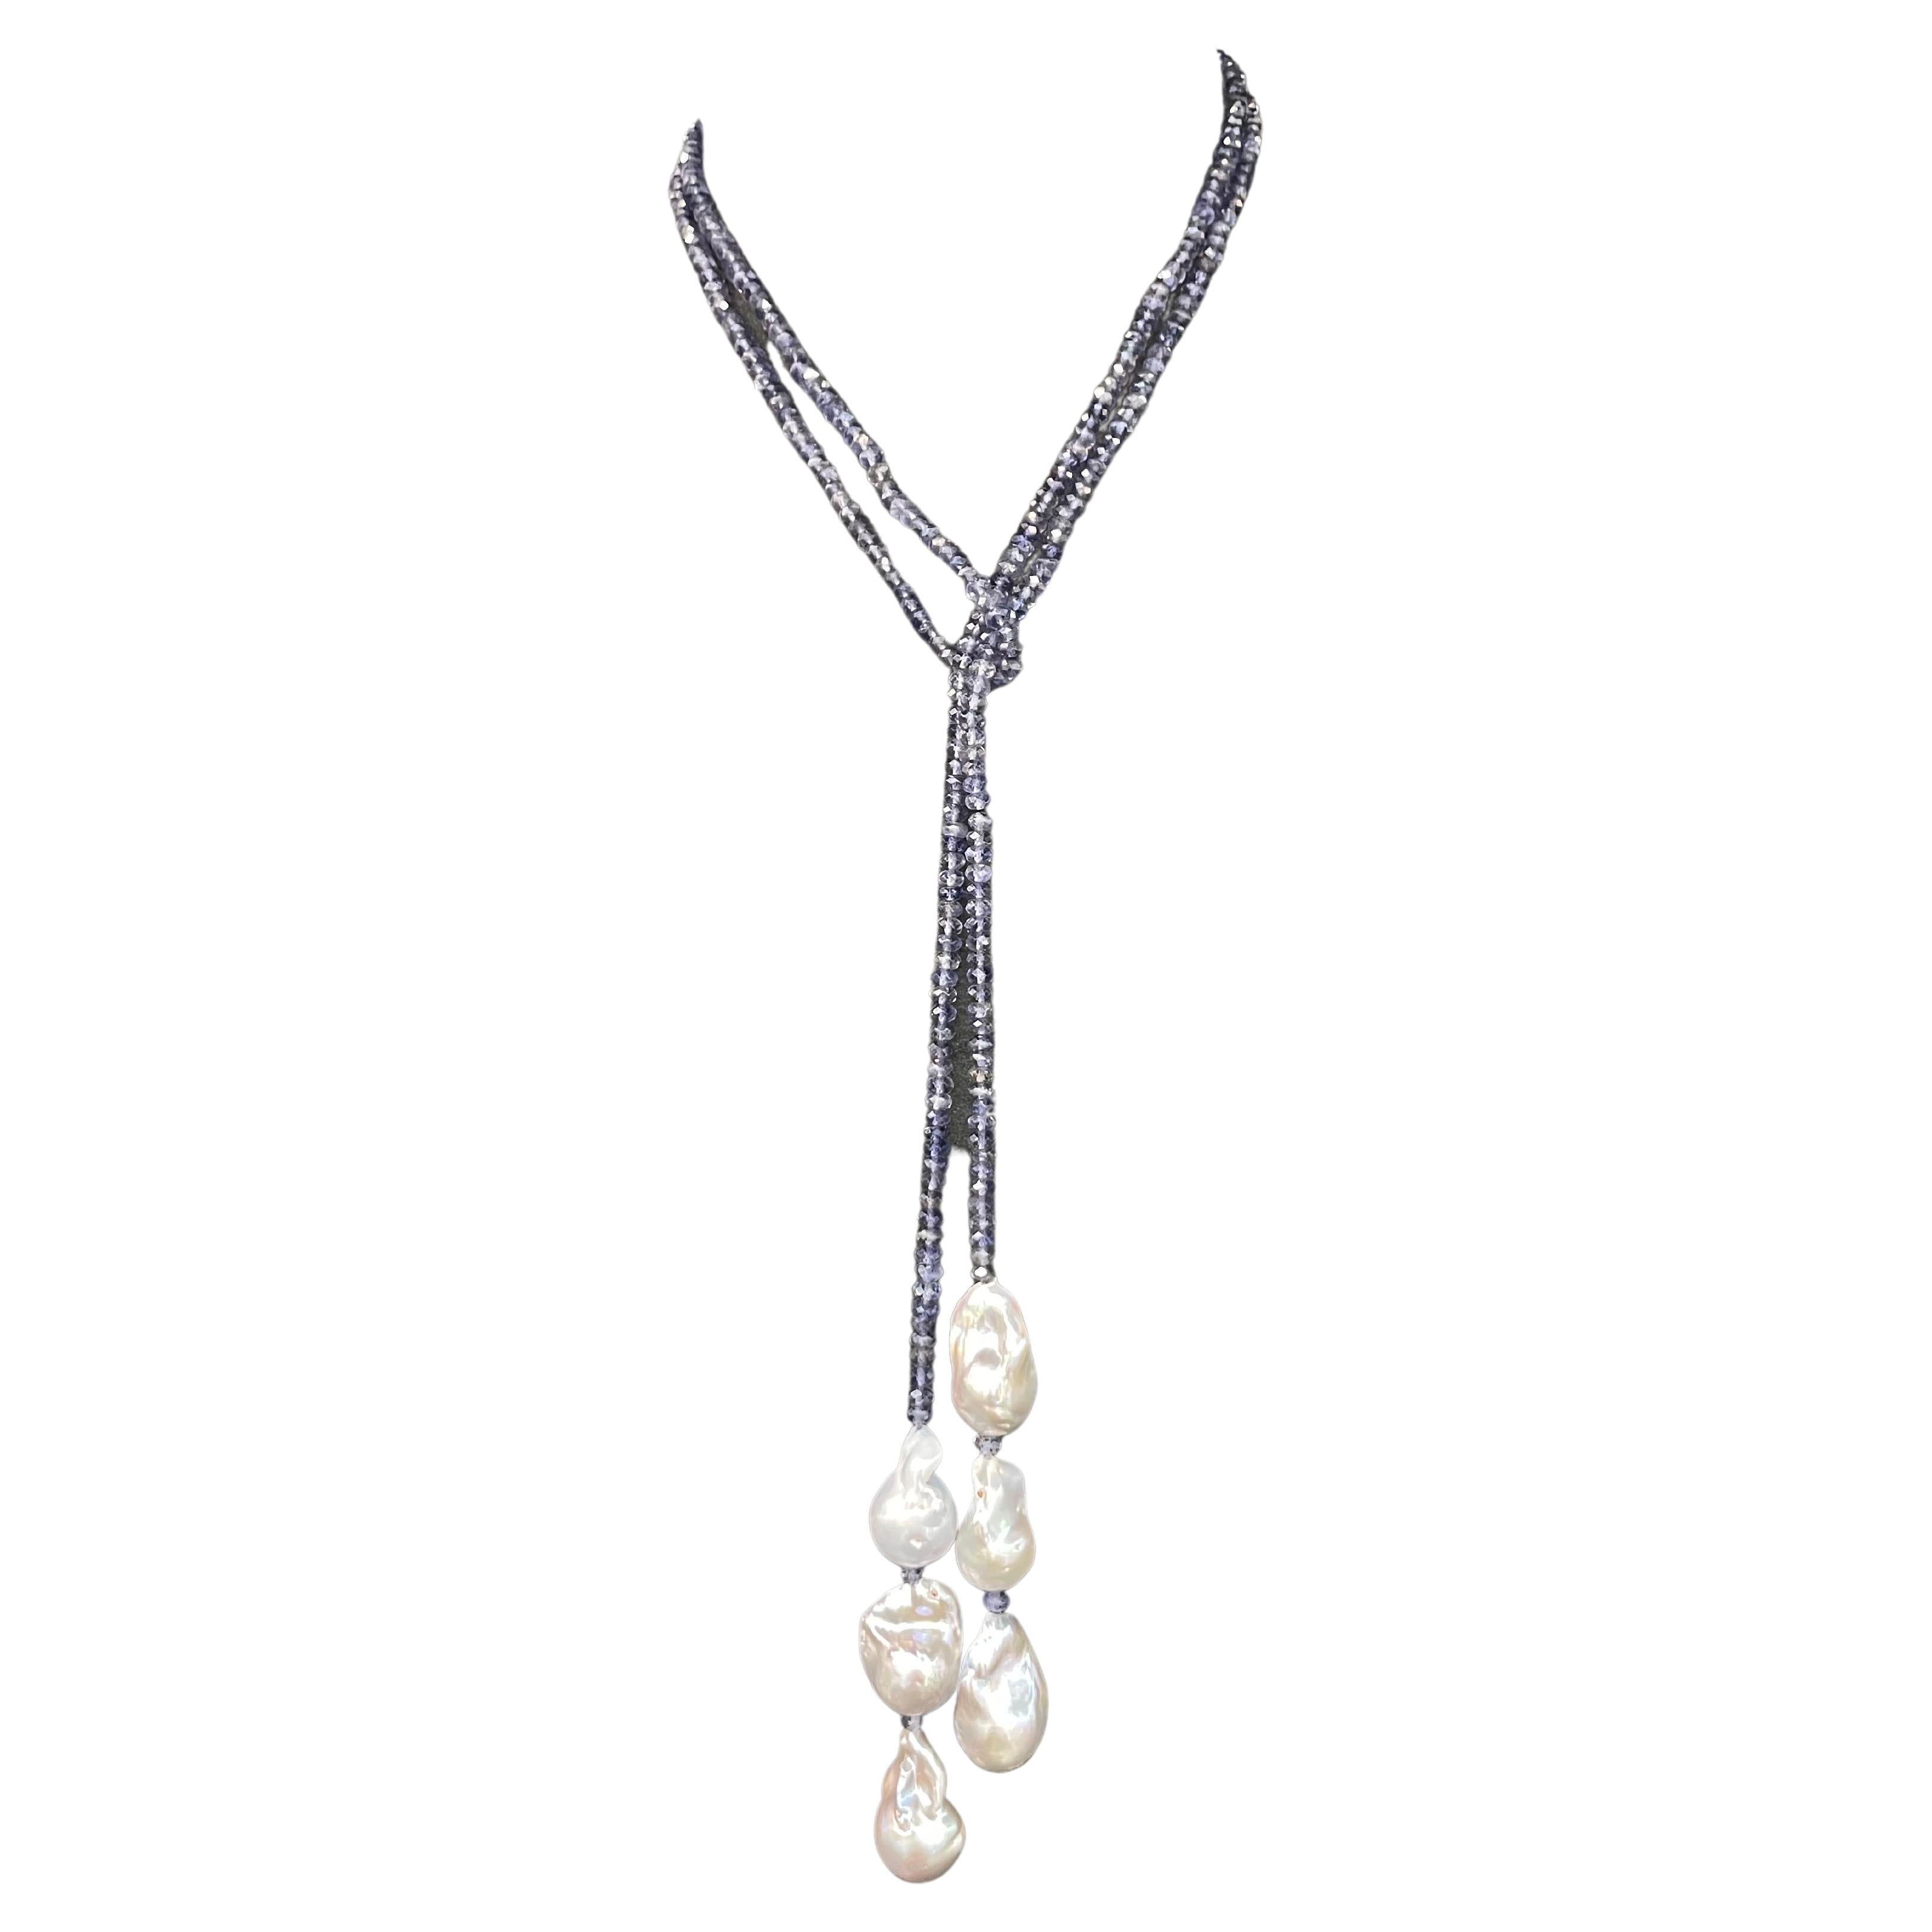 Halskette aus iolithgrauer Barockperlen mit Quaste, 50 Zoll lang